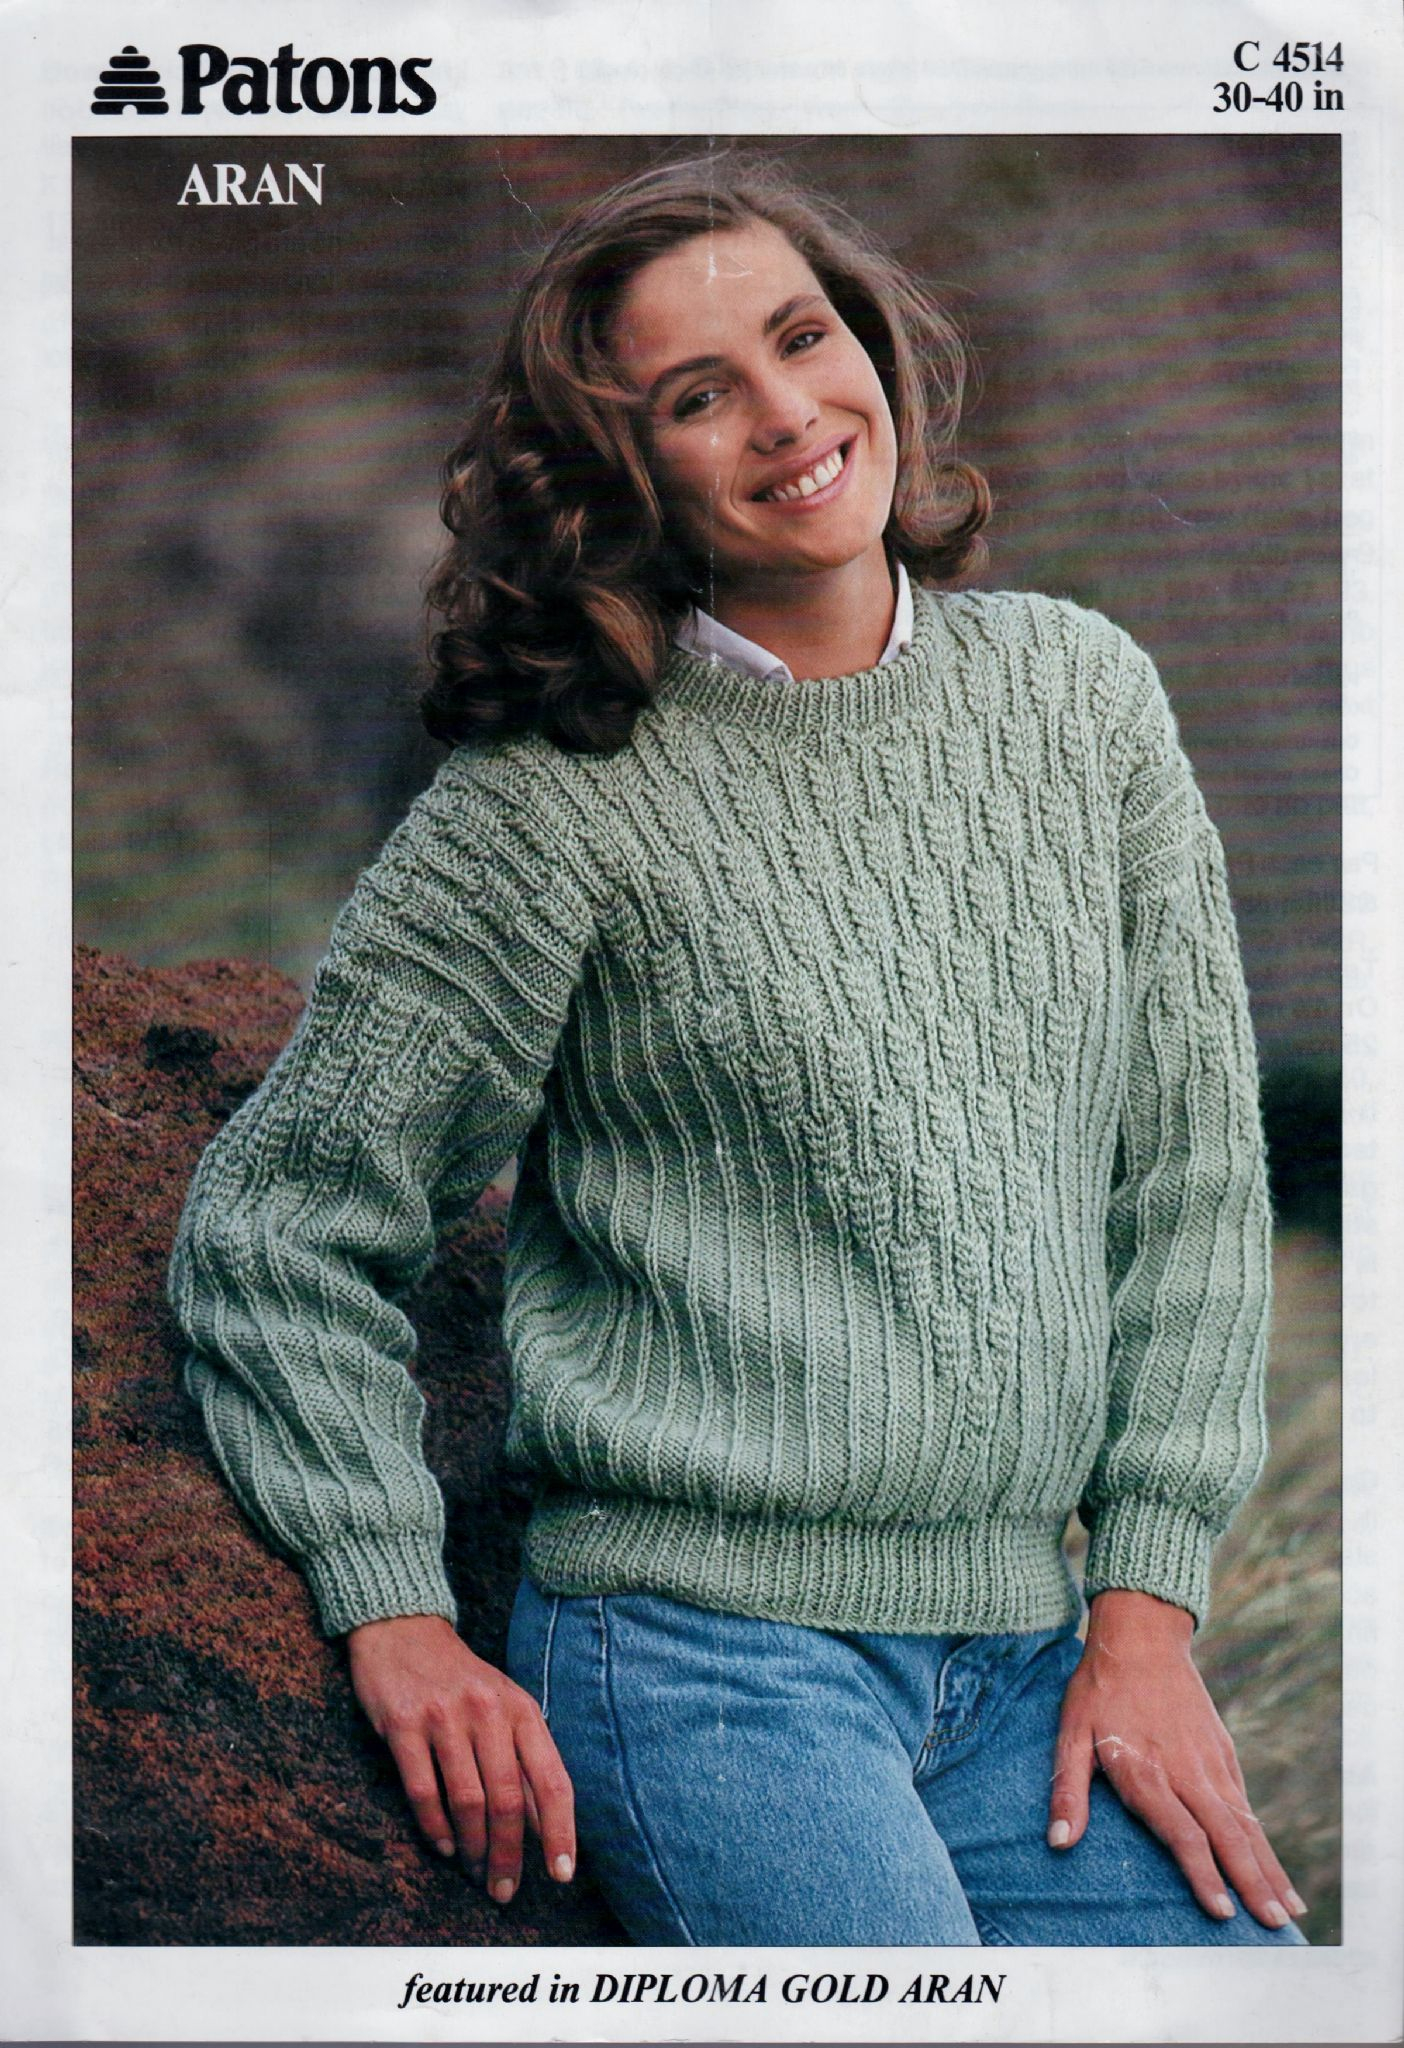 Ladies Aran Cardigan Knitting Patterns Instant Pdf Digital Download Vintage Knitting Pattern Patons C4515 Ladies Aran Sweater Jumper 30 40